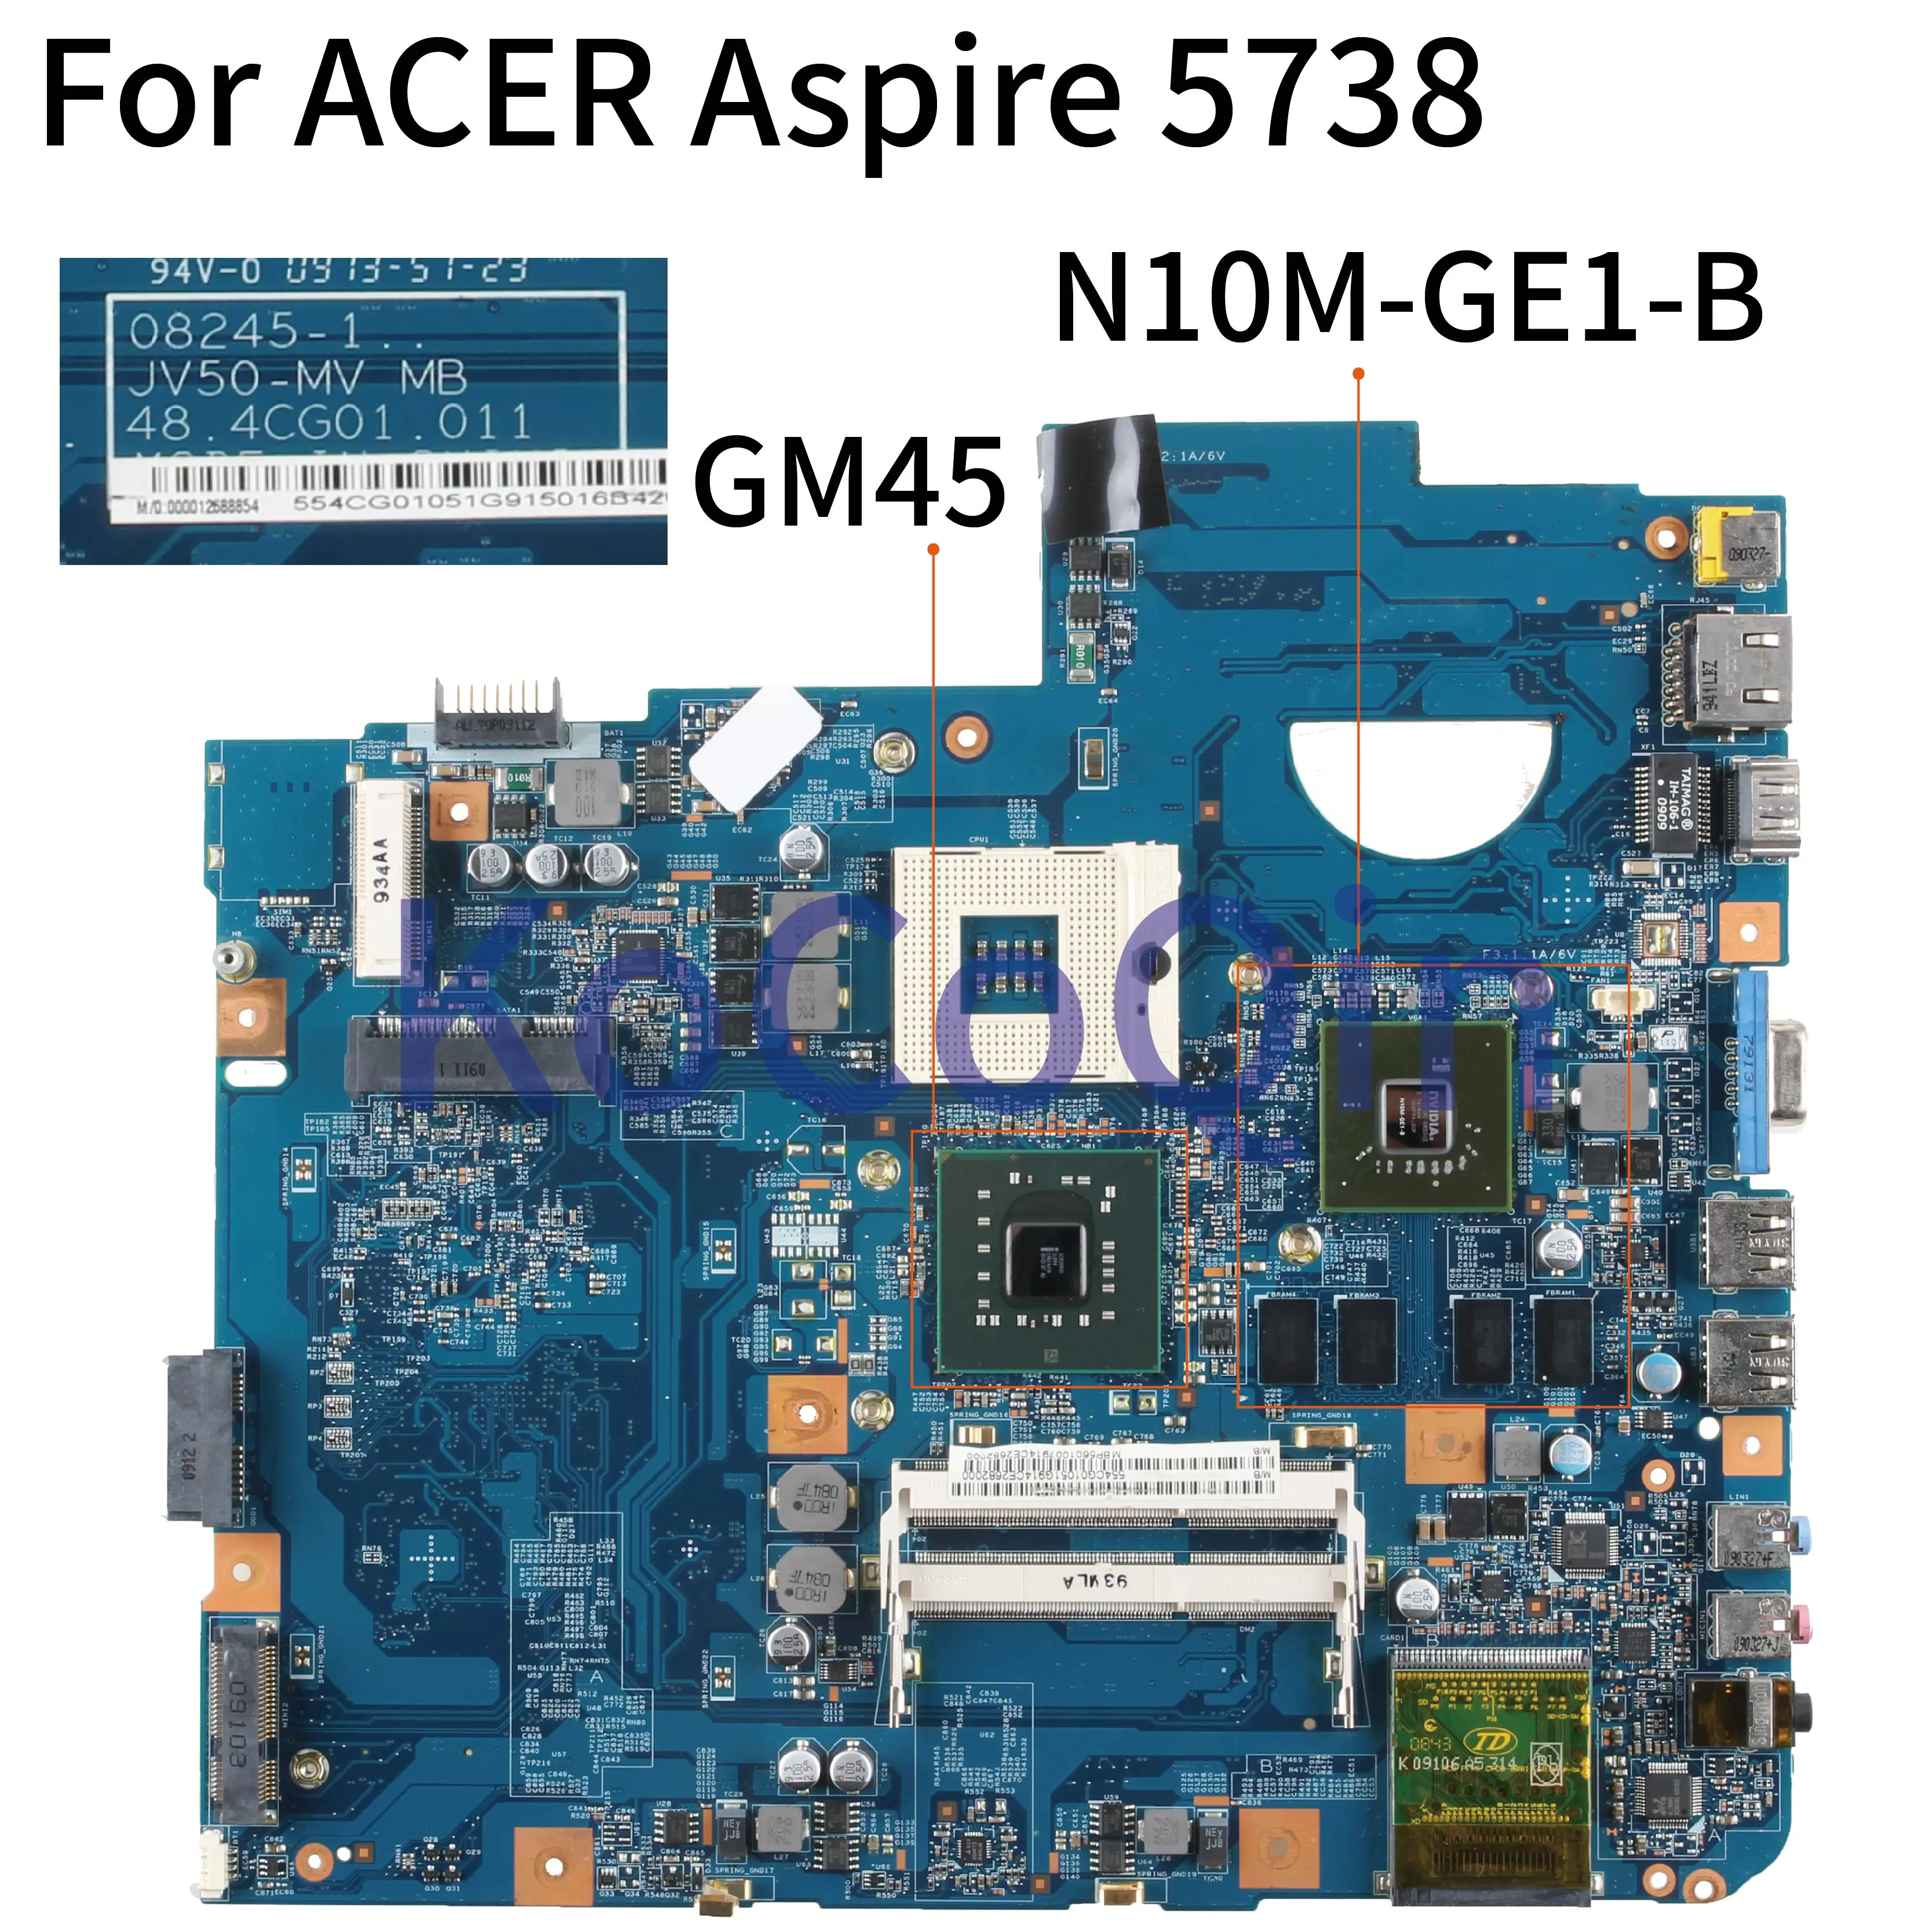 KoCoQin Laptop motherboard For ACER Aspire 5738 5738G DDR3 Mainboard 08245-1 JV50 MV MB 48.4CC01.011 N10M-GE1-B GM45